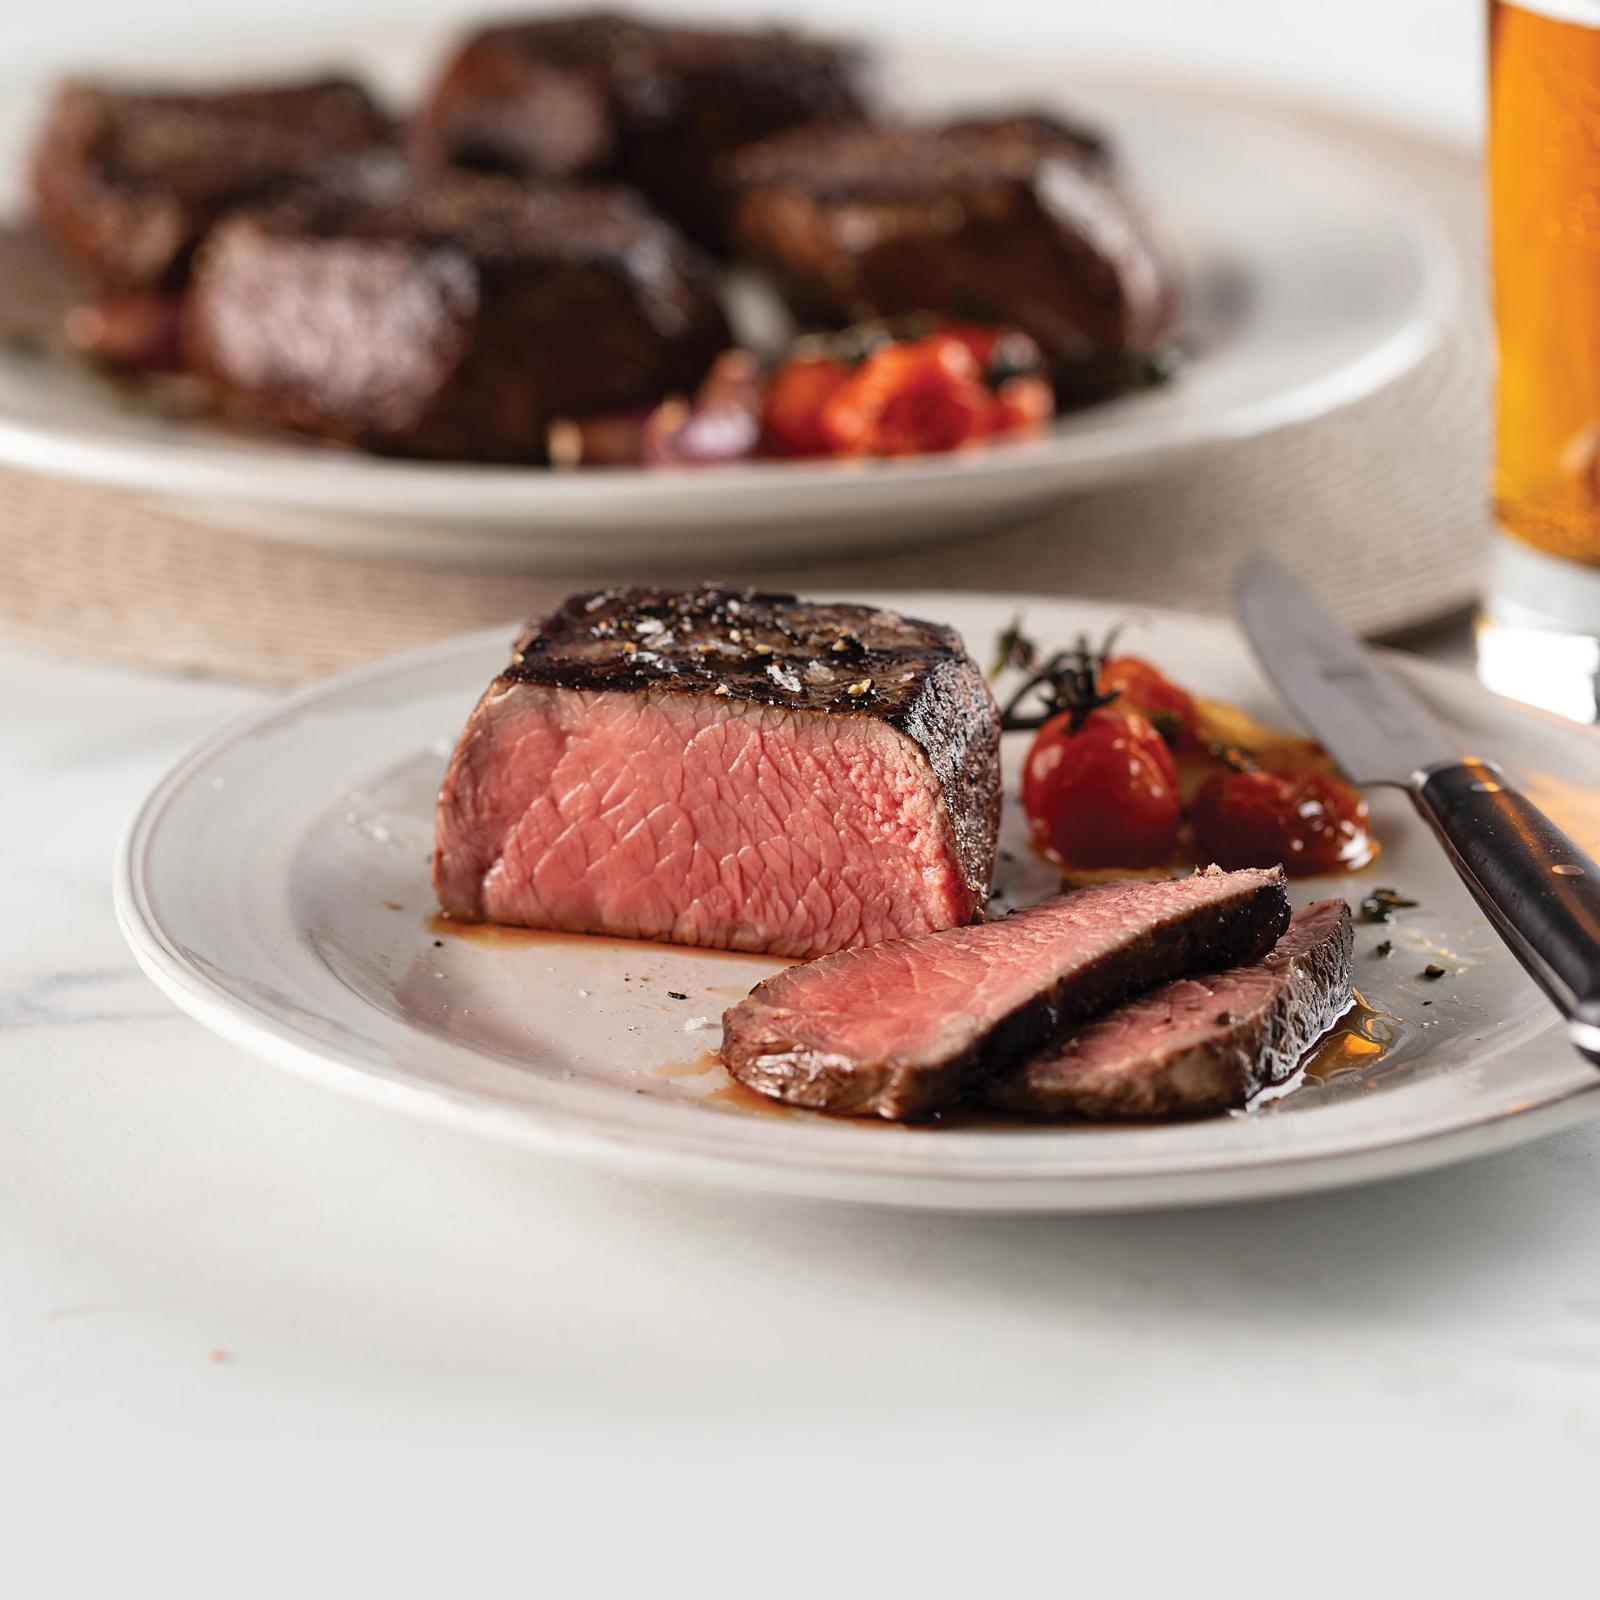 Omaha Steaks Steak Time App Makes Gift Giving Easy